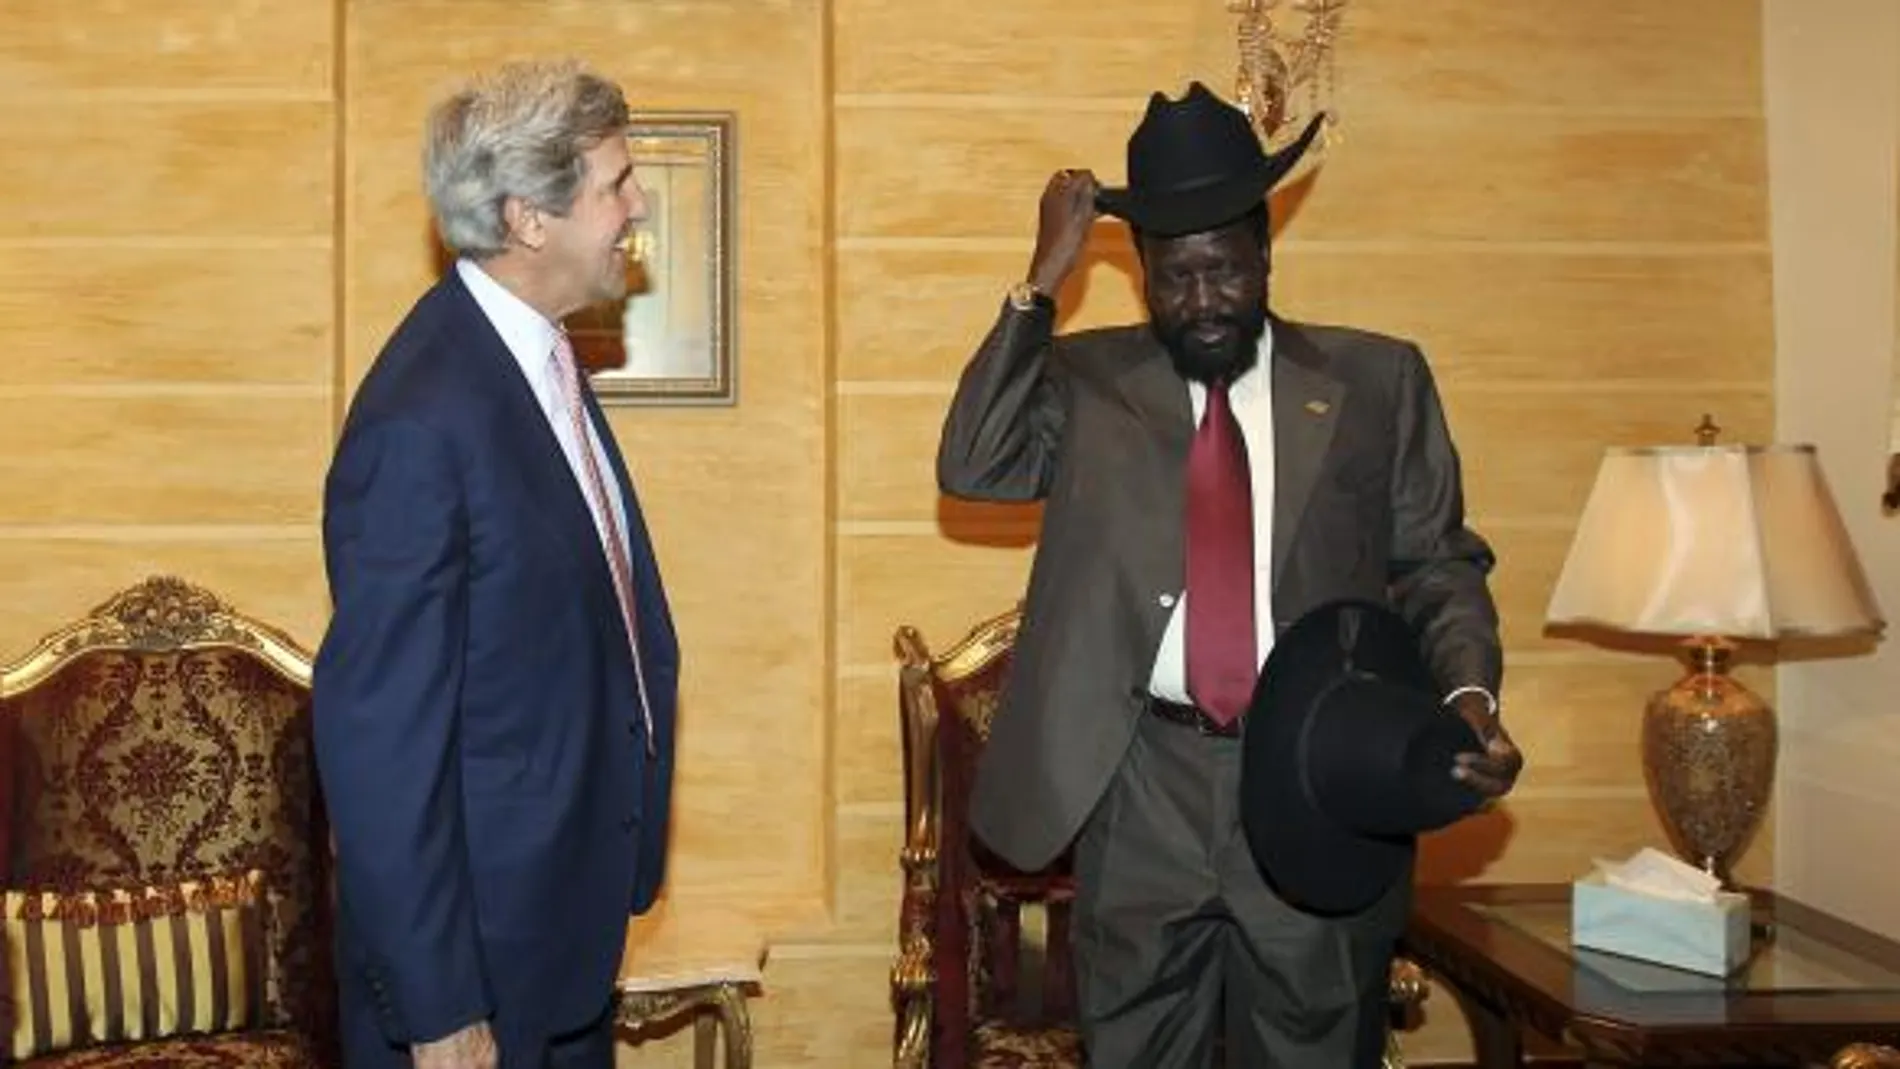 El senador estadounidense John Kerry (i) sonríe mientras el presidente del gobierno de Sudán del Sur, Salva Kiir Mayardit (d) se prueba el sombrero que le ha regalado Kerry, durante su encuentro en el palacio presidencial de Juba, en el sur de Sudán